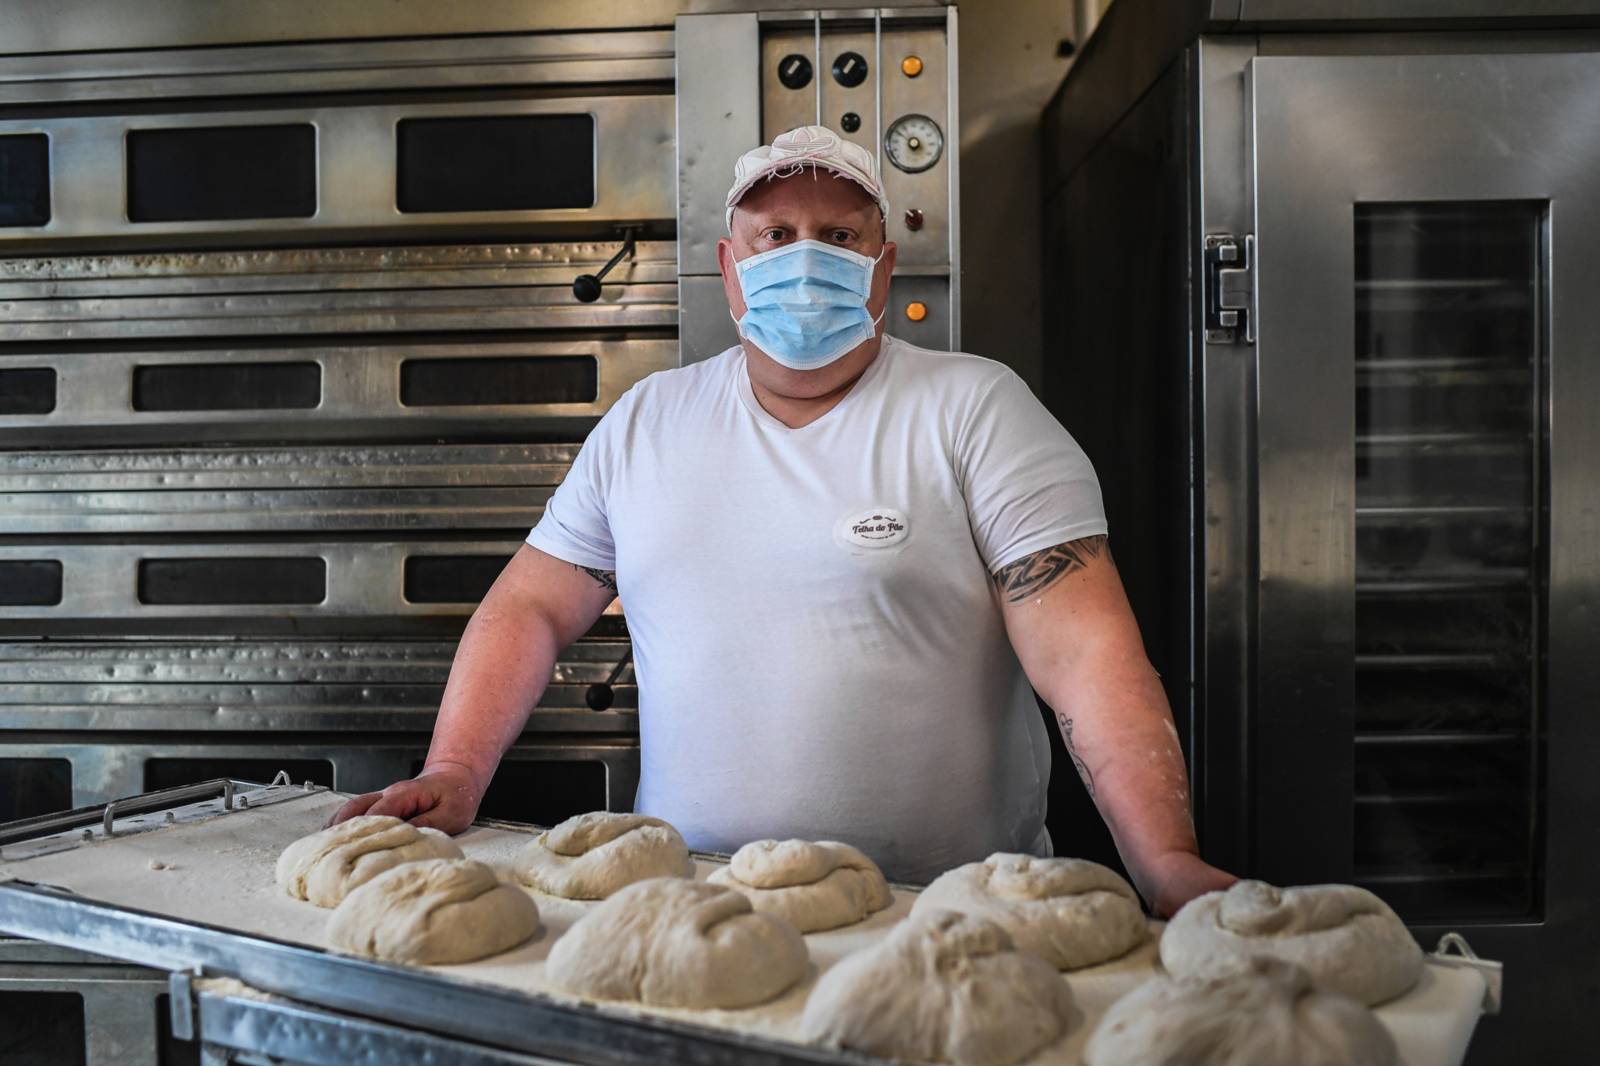 A baker wearing a face mask